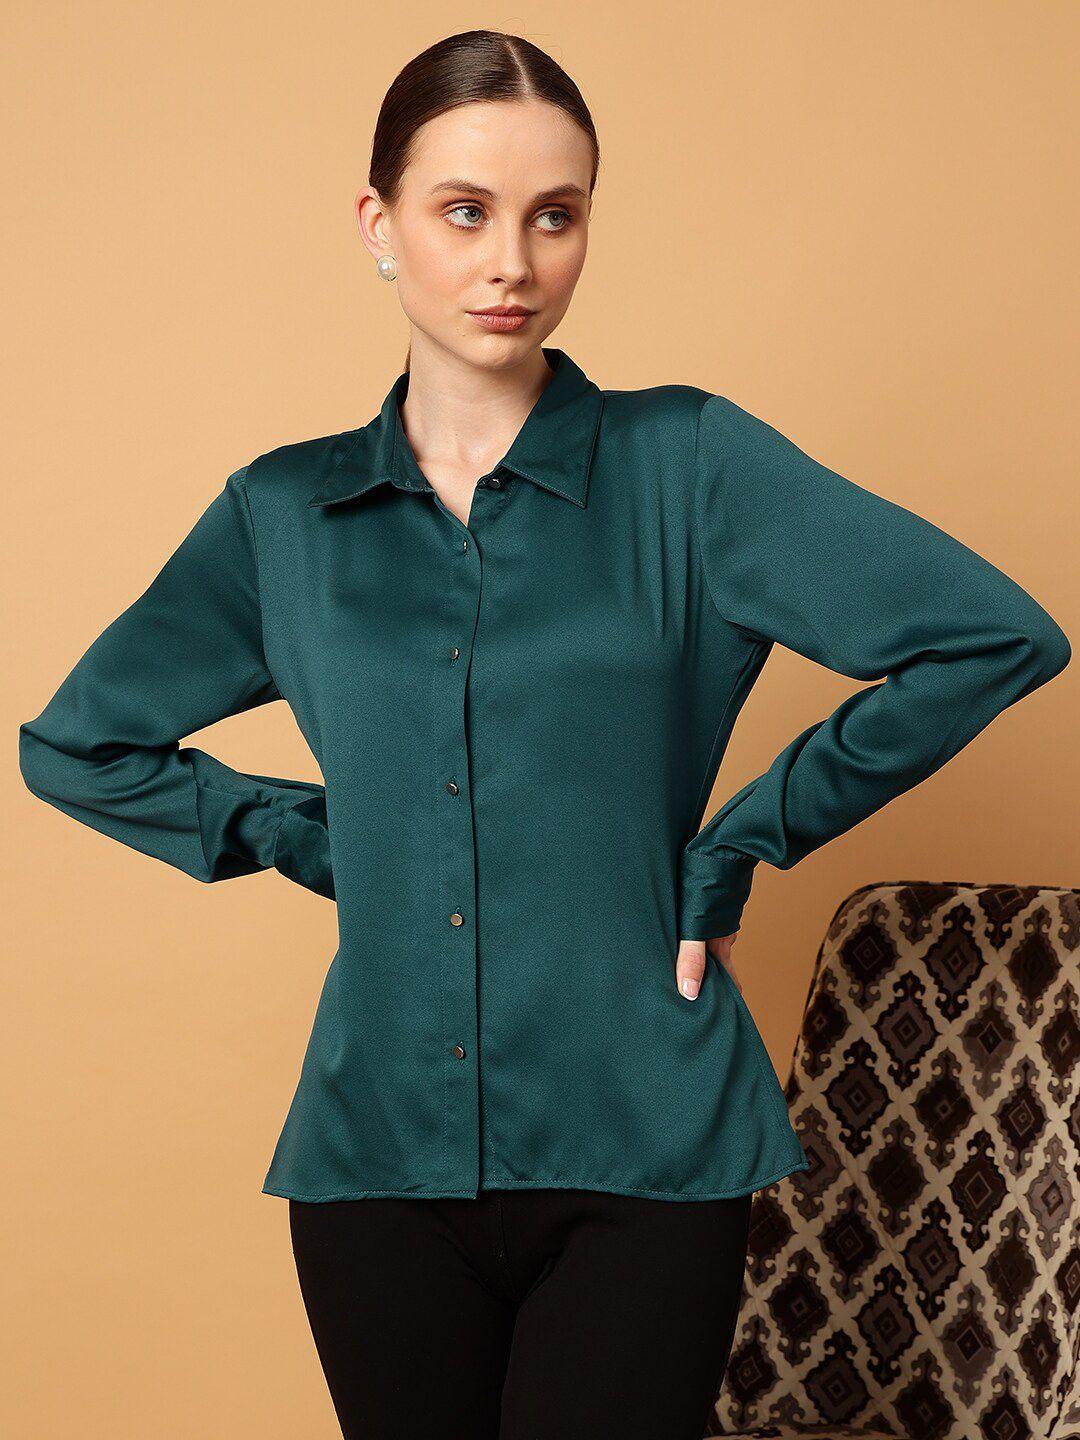 mint street comfort slim fit spread collar satin casual shirt